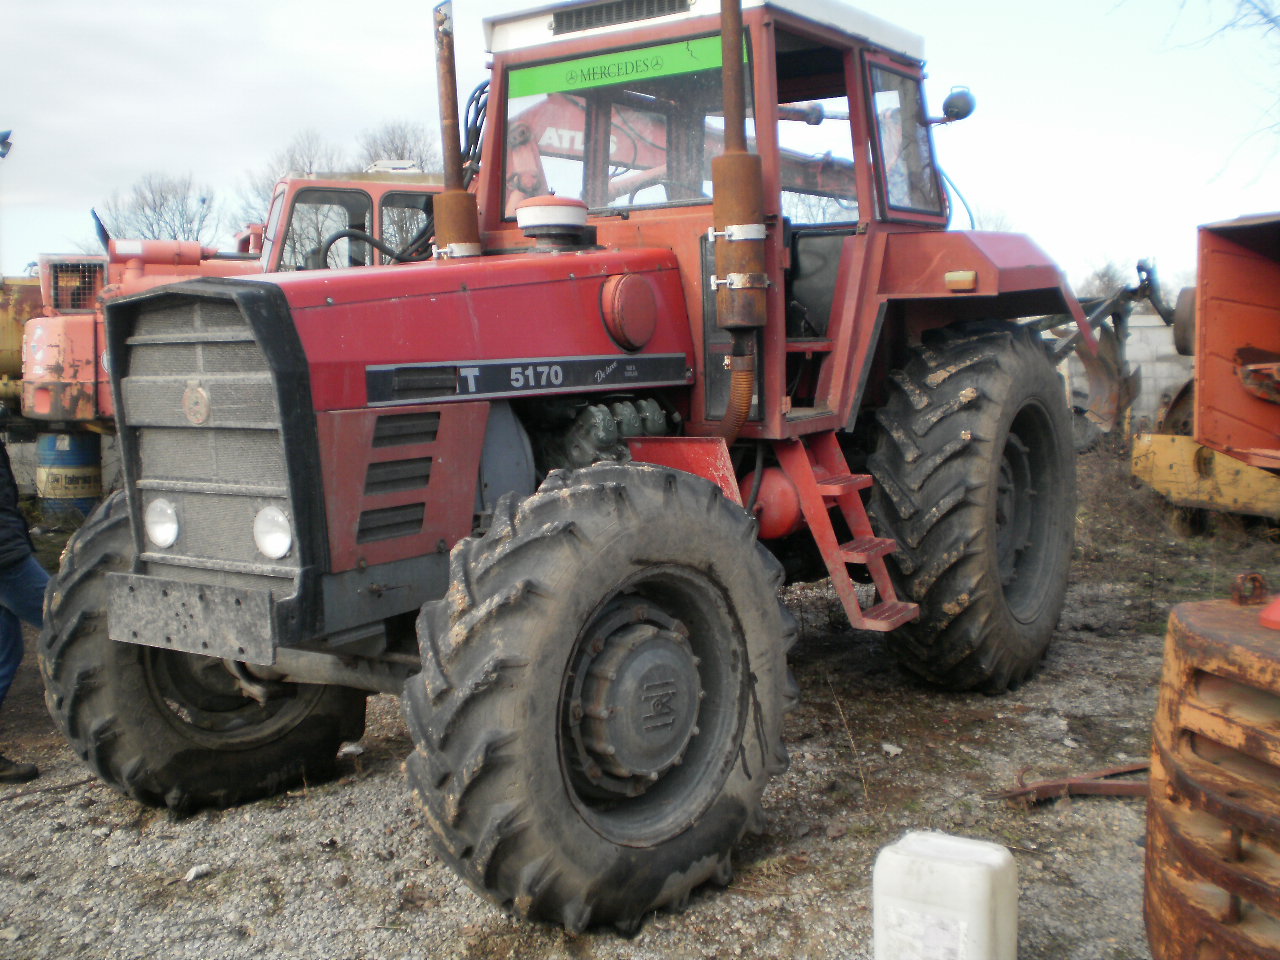 FORUMI - OGLASI prodajem ili menjam traktor imt 5170 1989 godiste sa ...